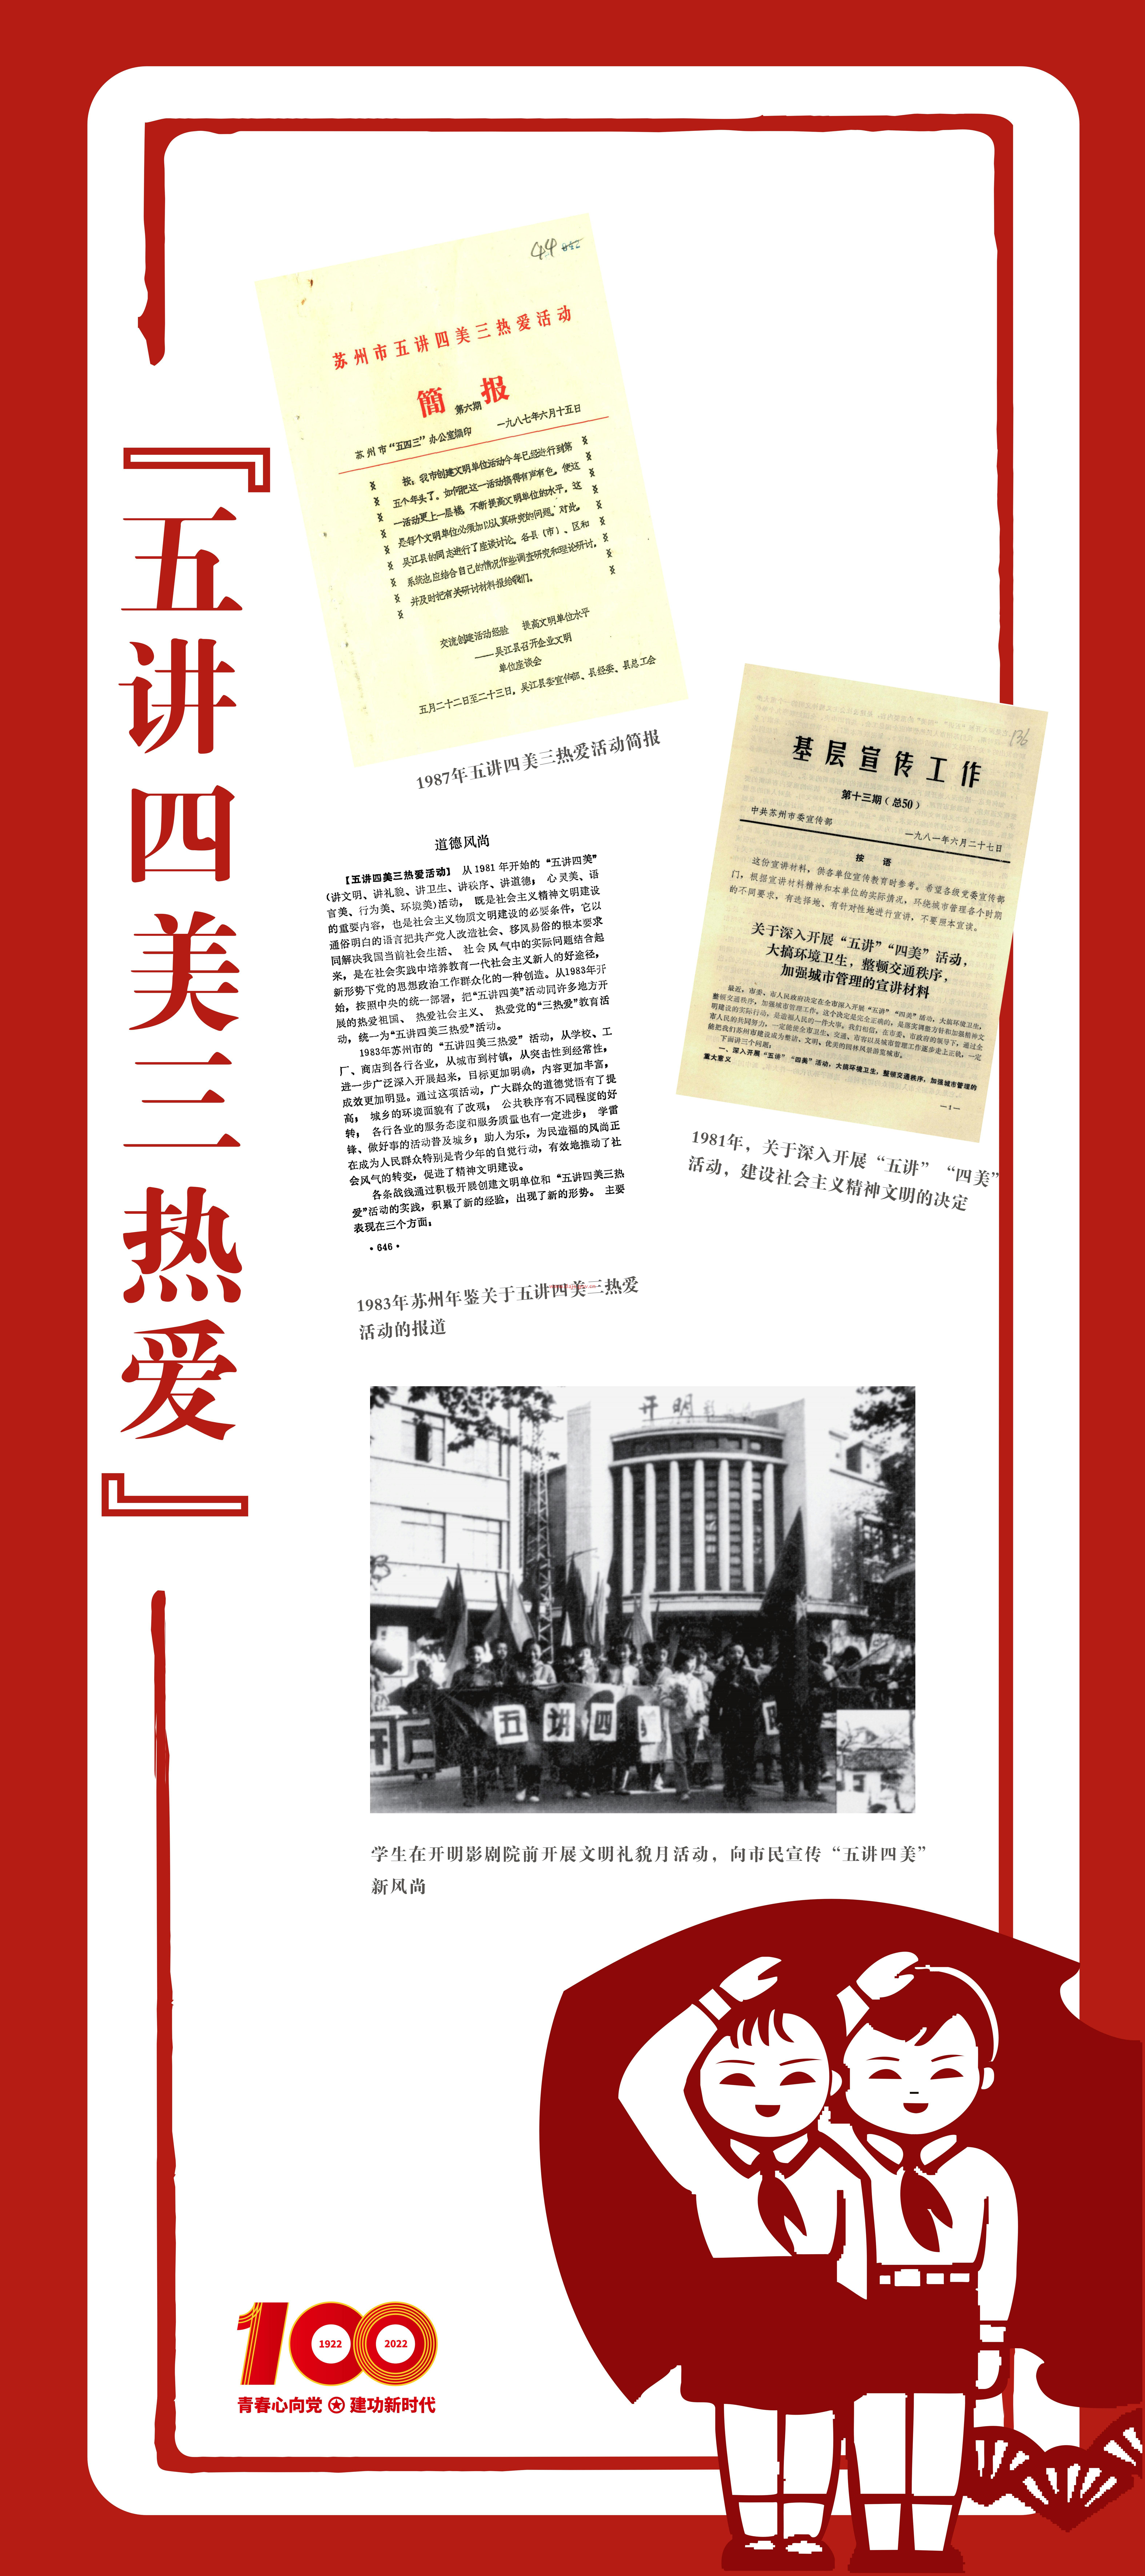 红色百年耀青春 共青团100周年档案图片展14